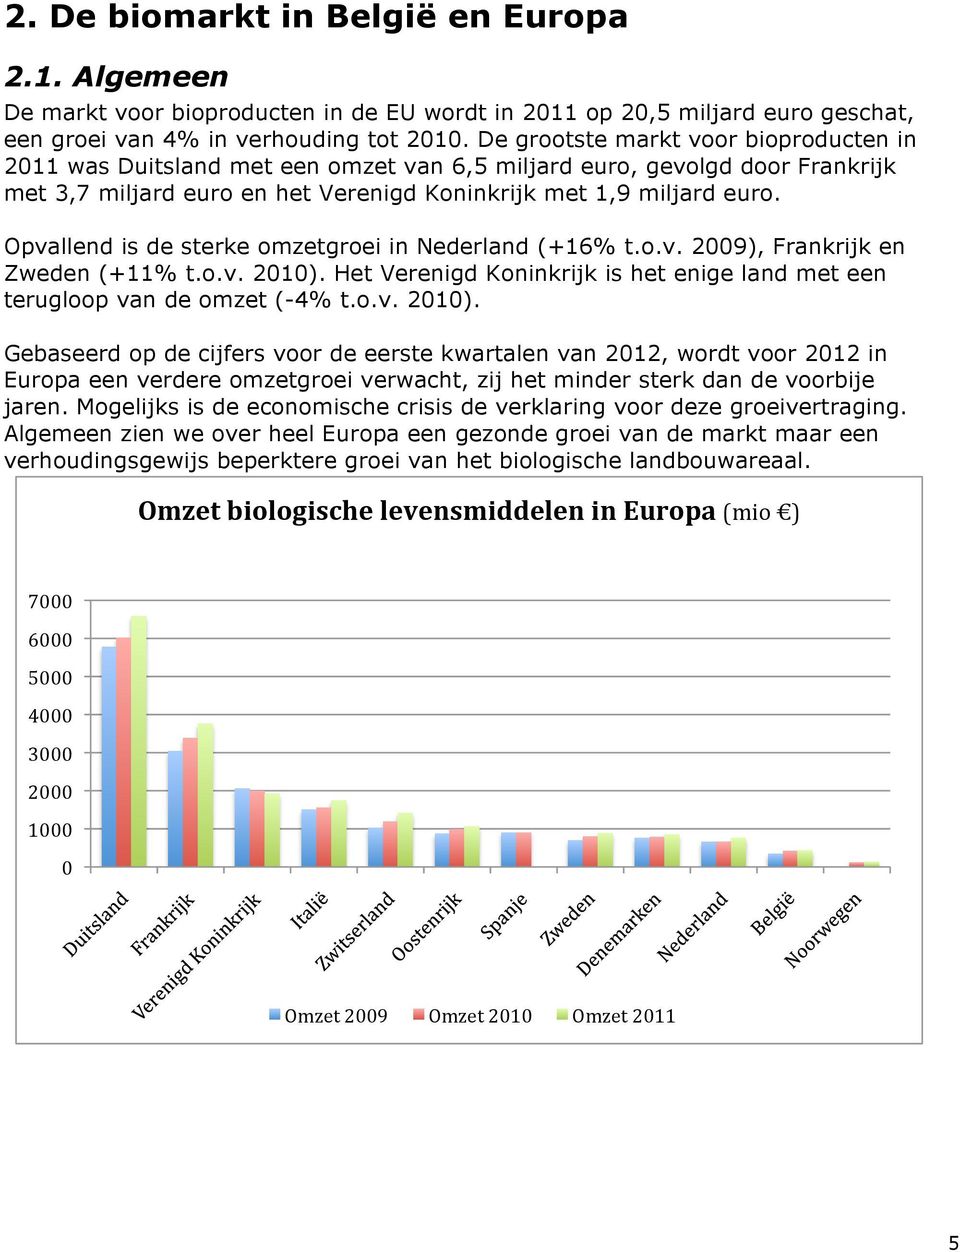 Opvallend is de sterke omzetgroei in Nederland (+16% t.o.v. 2009), Frankrijk en Zweden (+11% t.o.v. 2010).